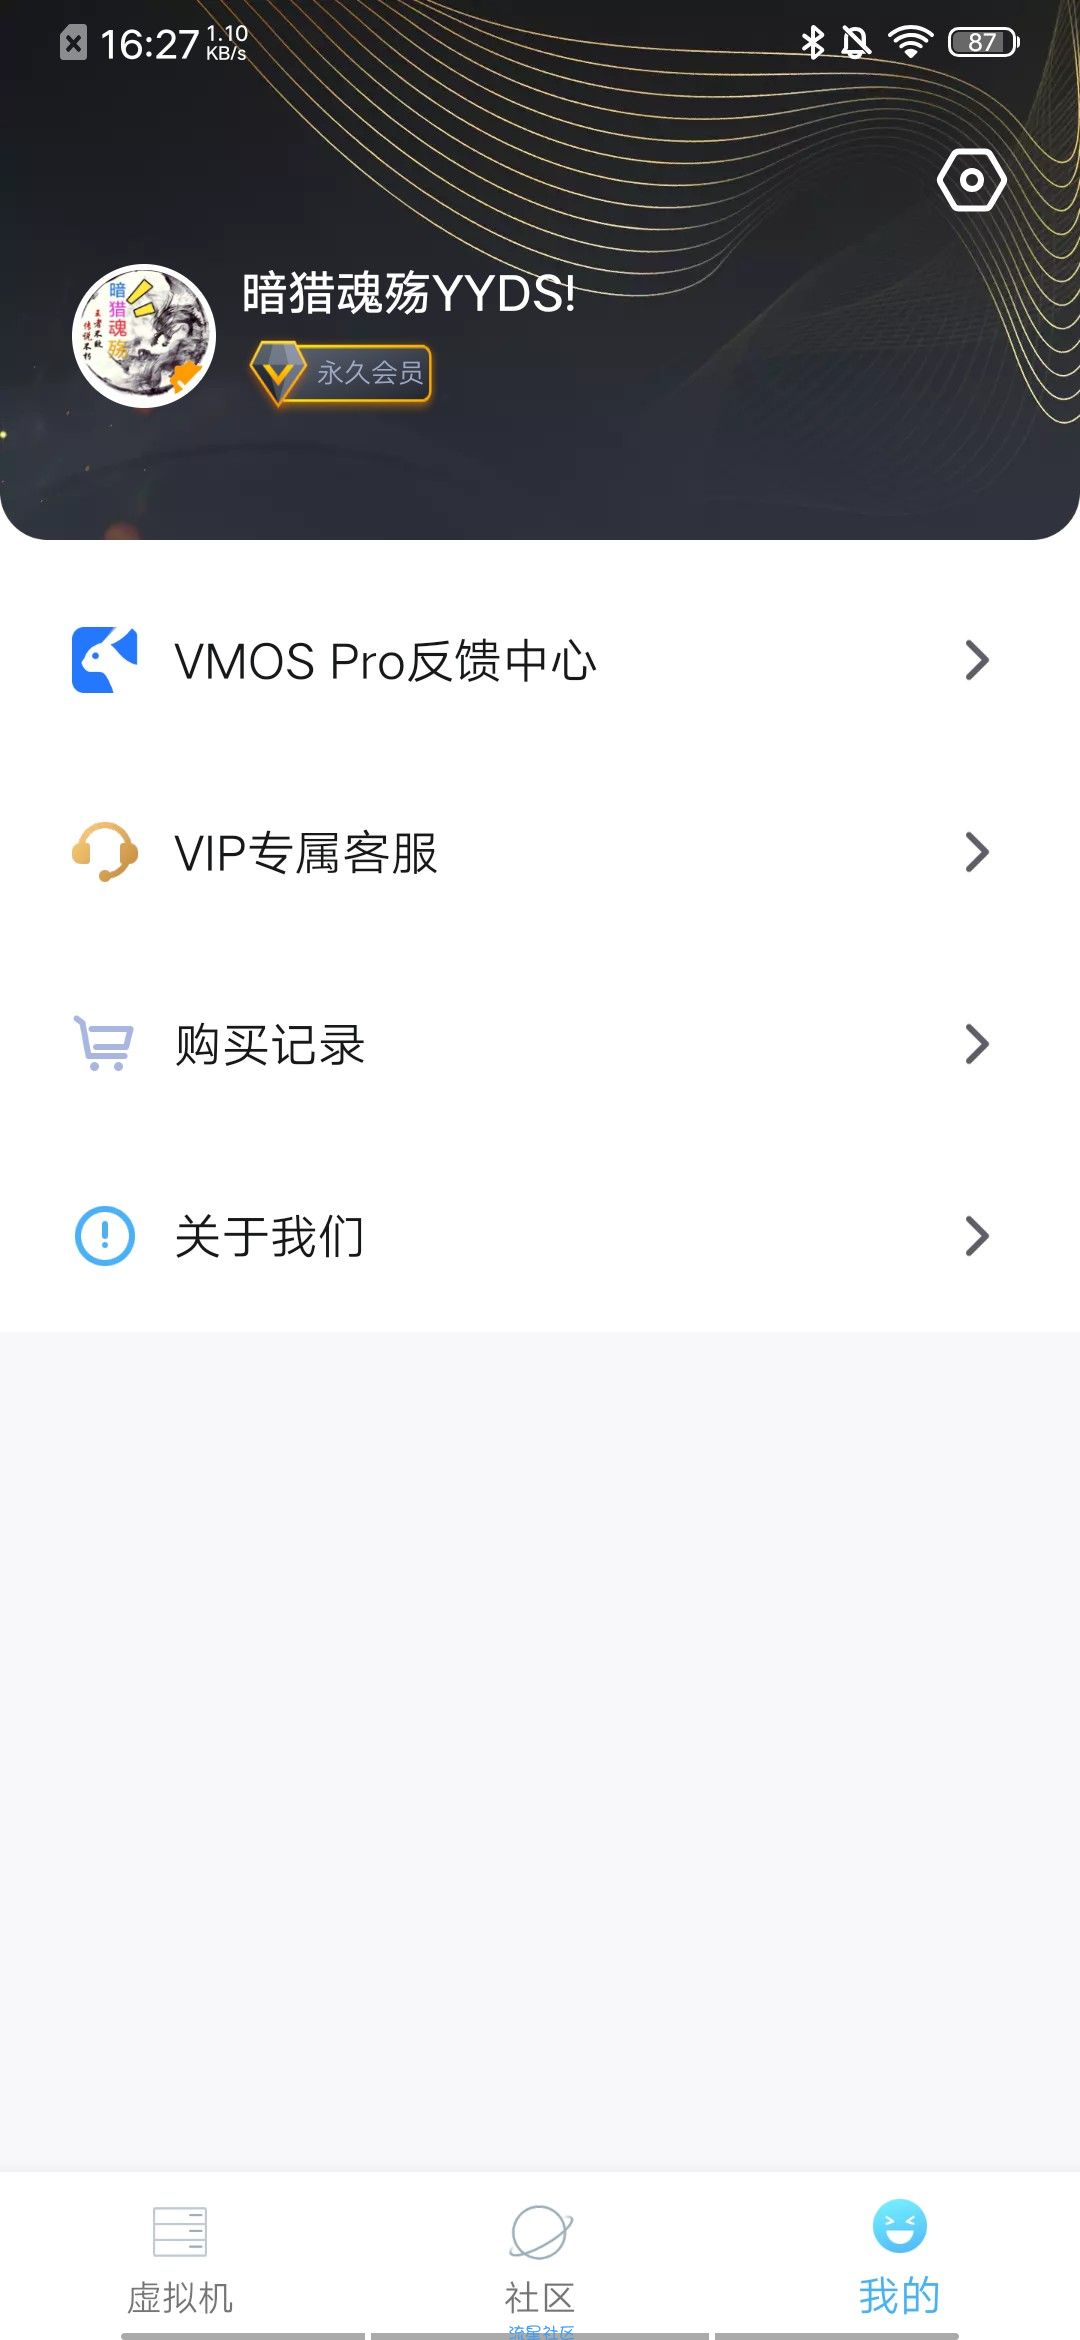 VMOS Pro v2.9.8，还有光速虚拟机